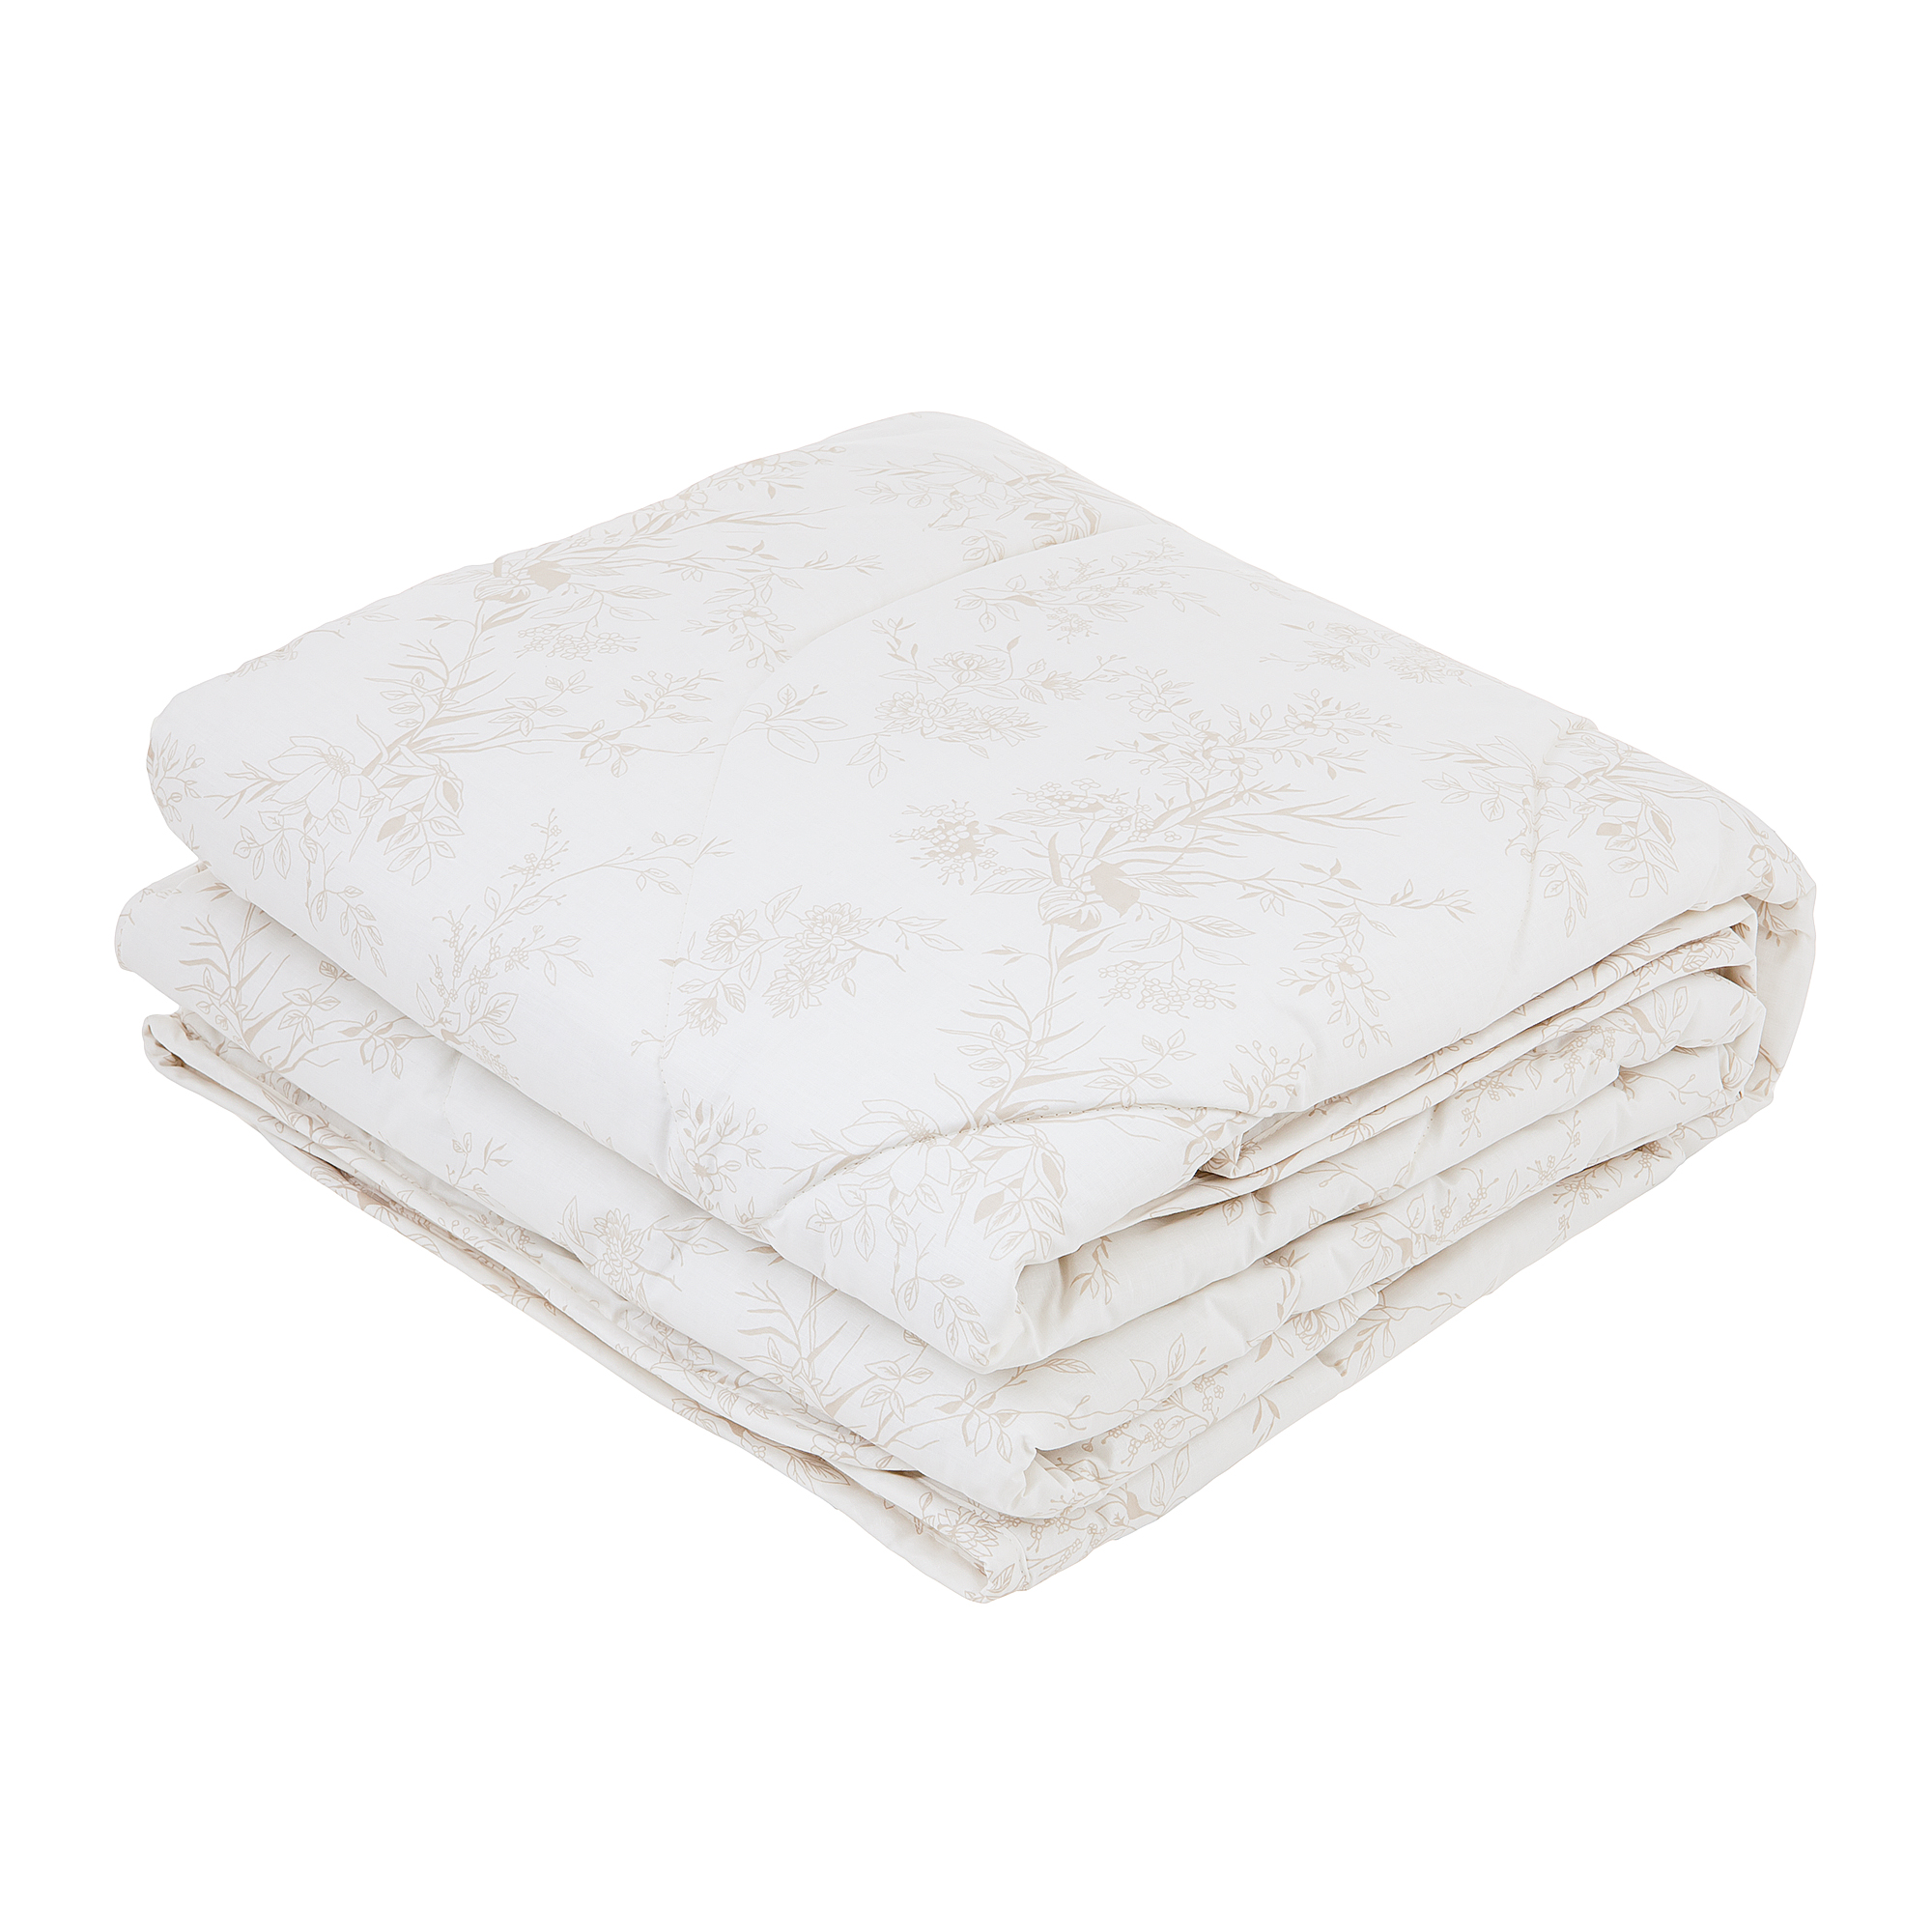 Одеяло Classic by T Хлопок-натурэль 200х210 одеяло togas кайзер белое 200х210 см